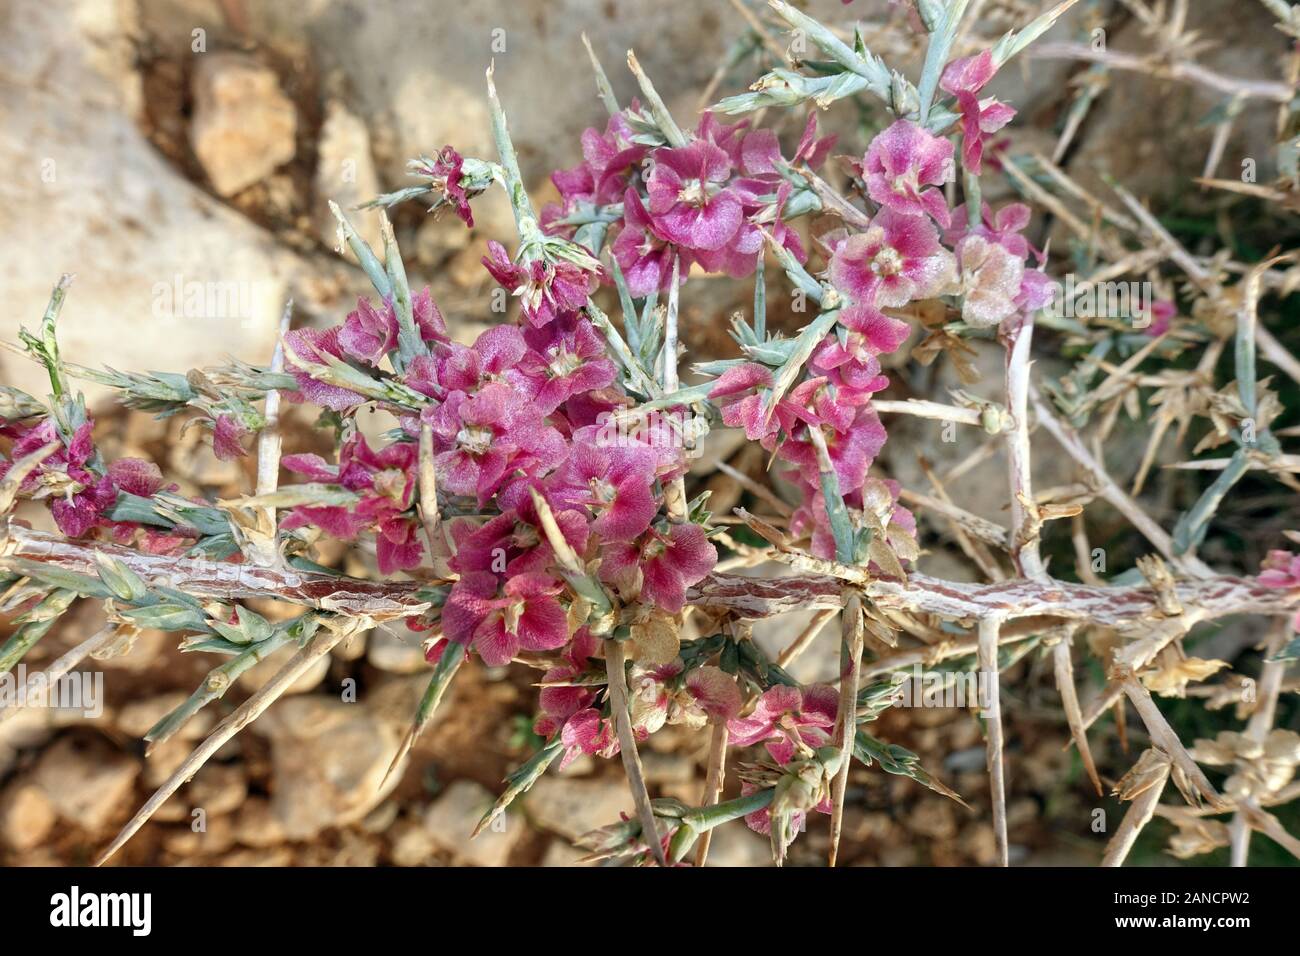 Ruthenisches Salzkraut oder Kali-Salzkraut (Salsola tragus ssp. tragus) , Bafra, Türkische Republik Nordzypern Stock Photo